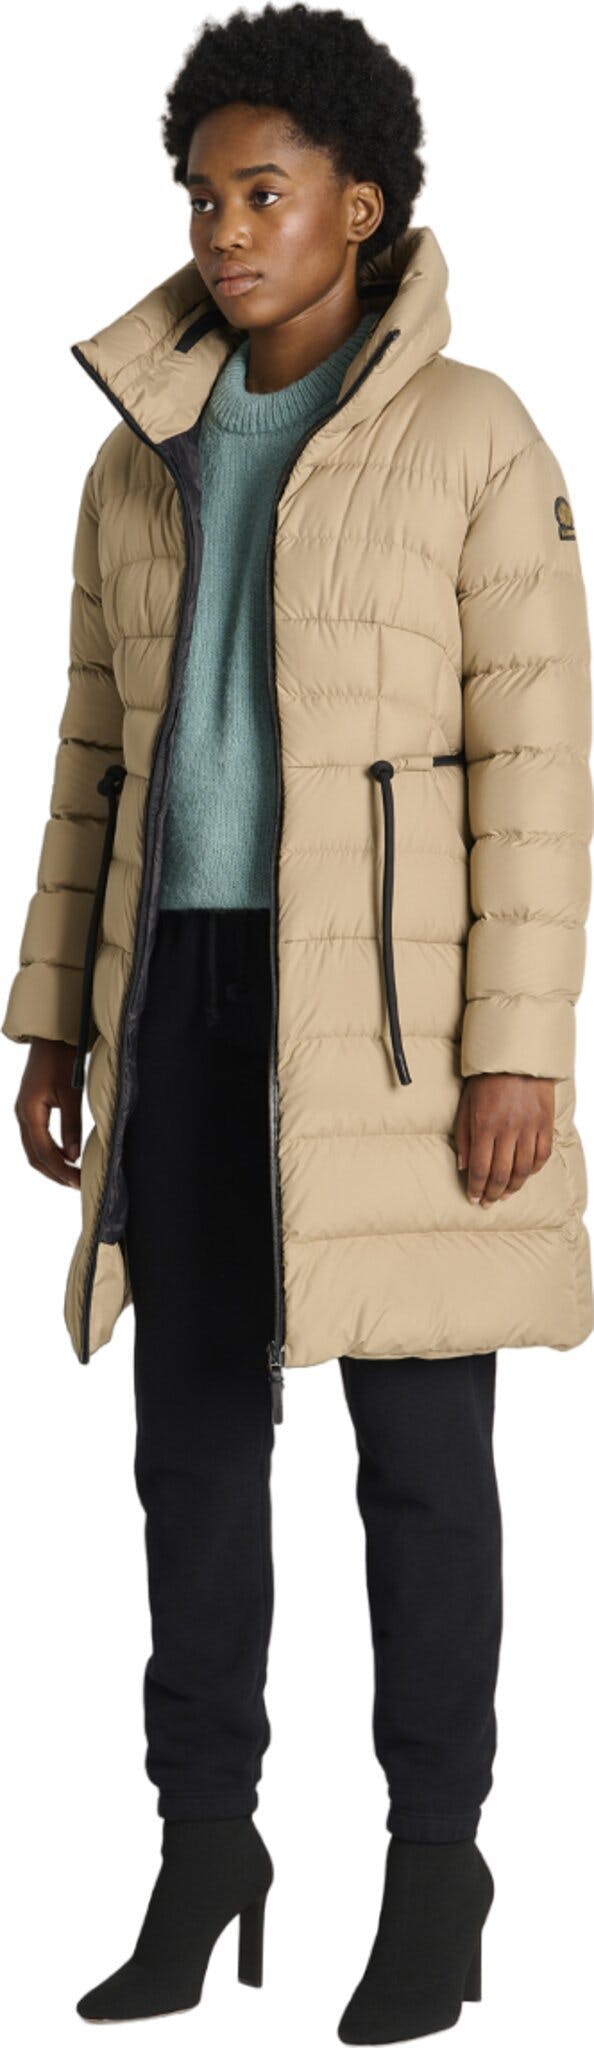 Numéro de l'image de la galerie de produits 3 pour le produit Manteau d'hiver Mayfair STF - Femme